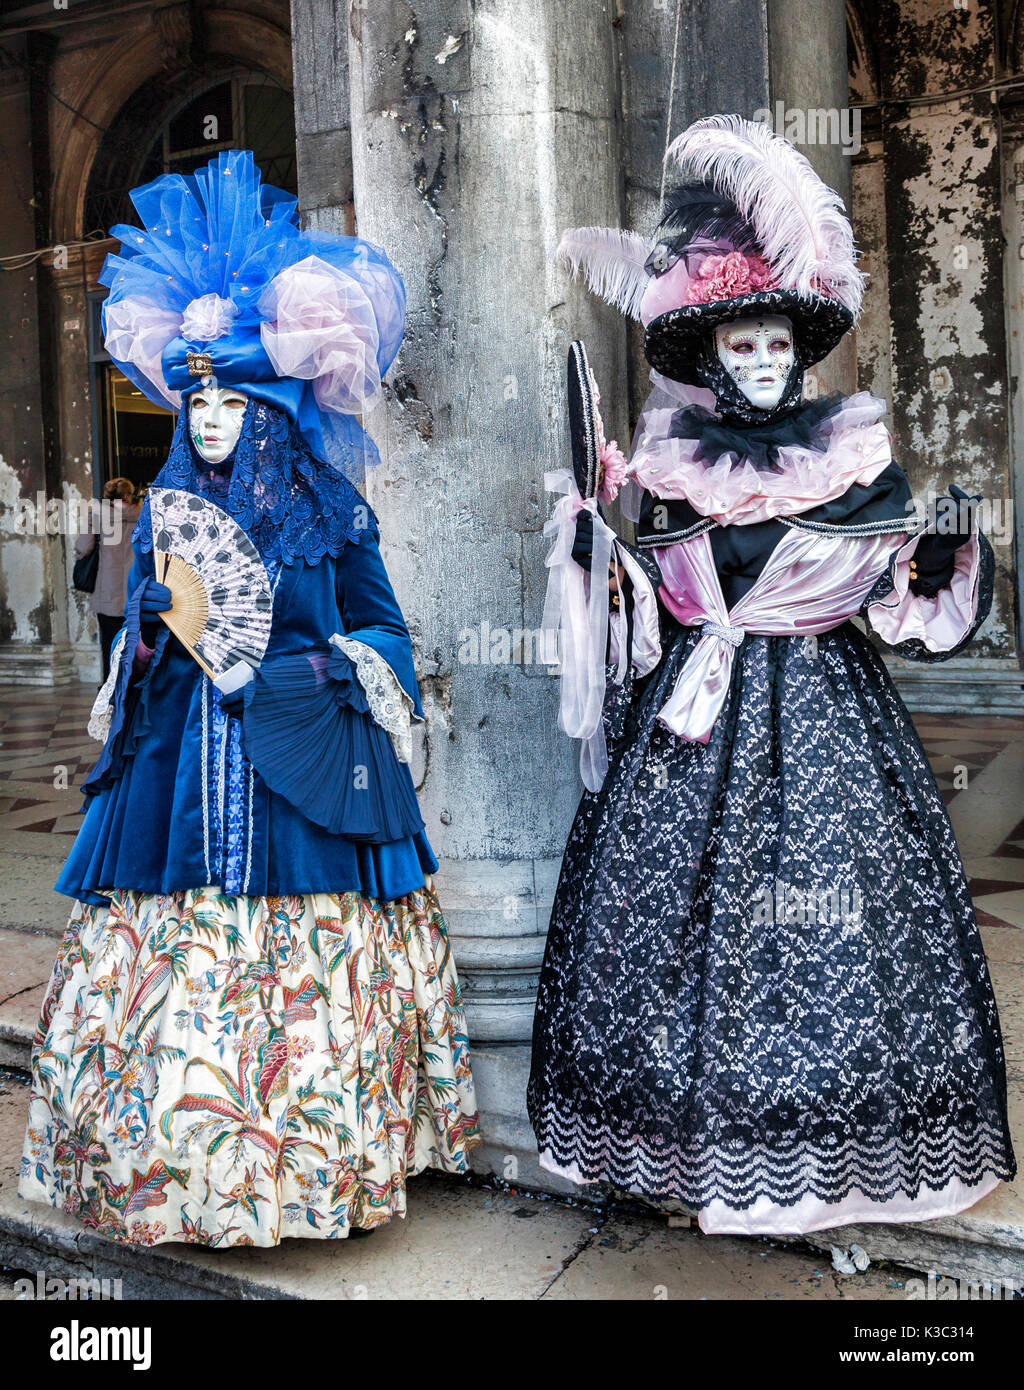 Venedig, Italy-February 18,2012: Zwei Personen tragen bestimmte Kostüme und Masken in Venedig während des Karnevals. Stockfoto